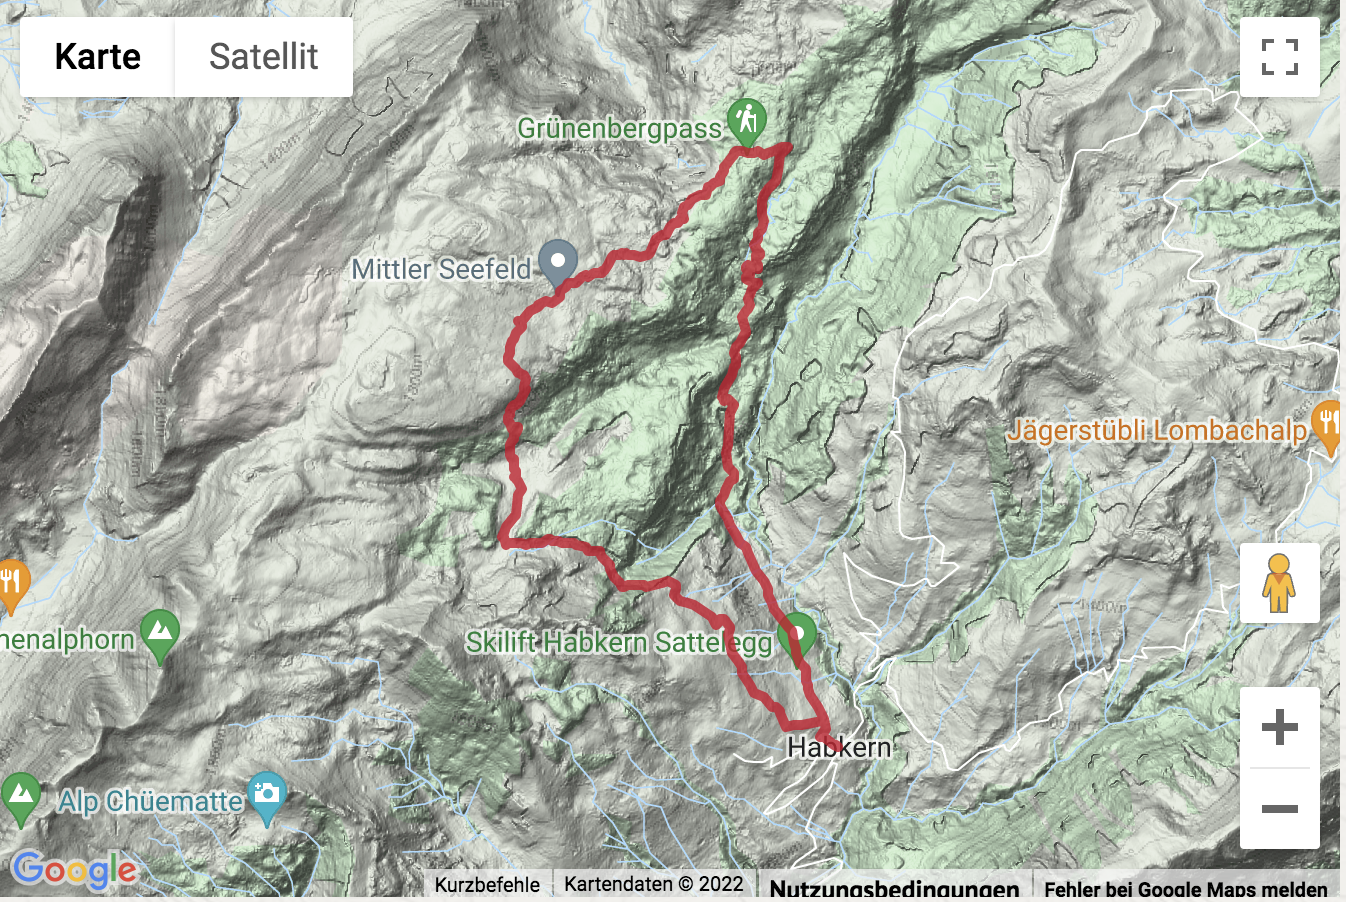 Carte de situation avec l'itinéraire pour la Randonnée depuis Habkern par le col du Grünenberg